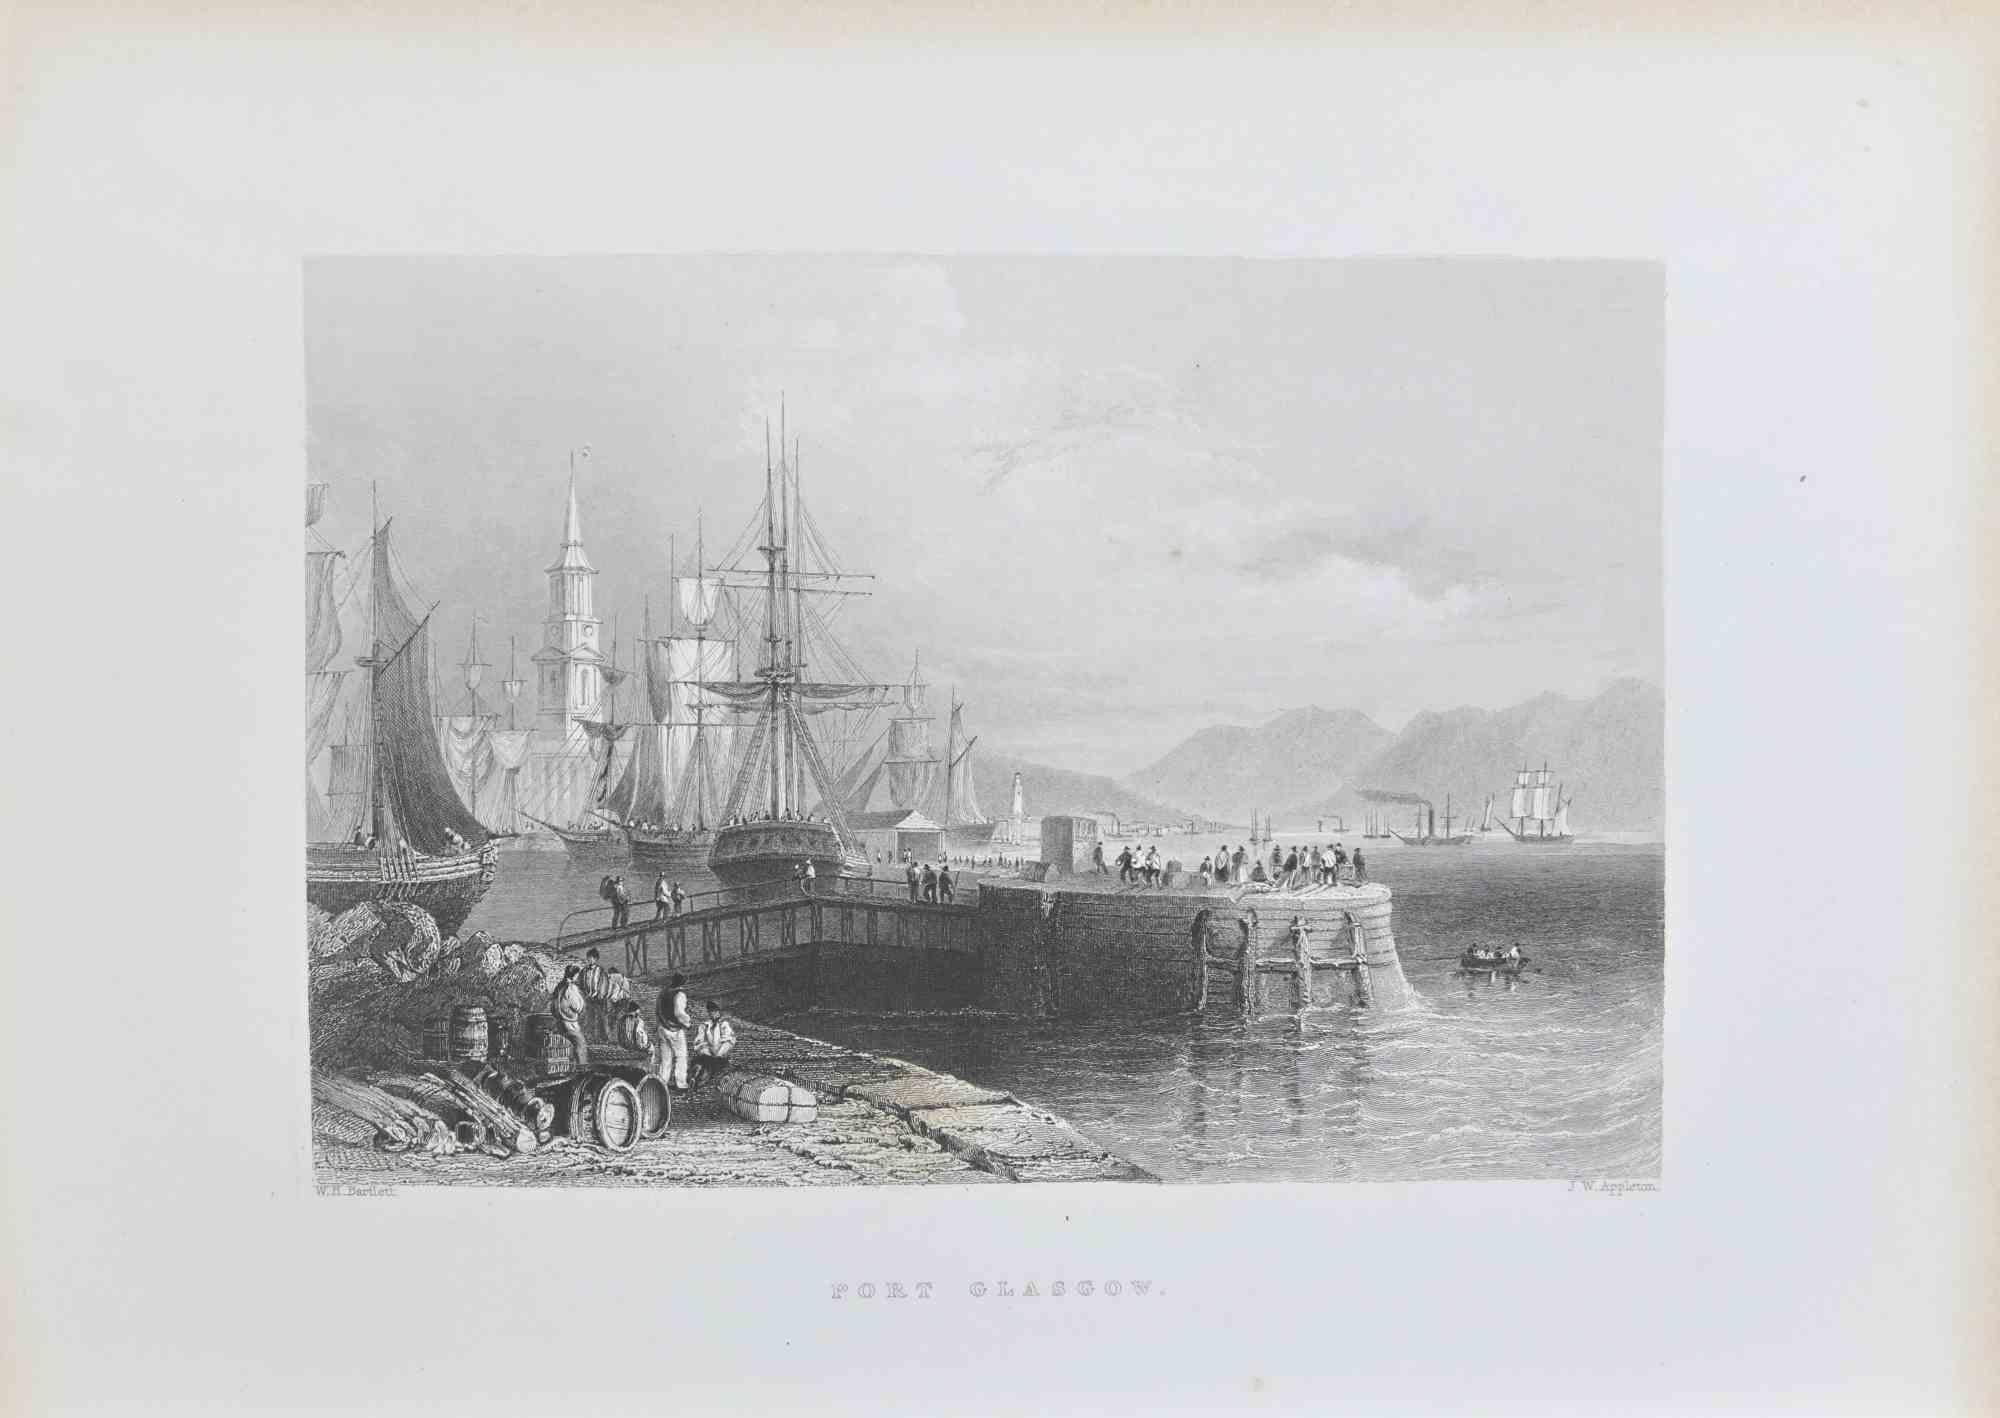 Port Glasgow - Etching by W. H.Bartlett - 1845